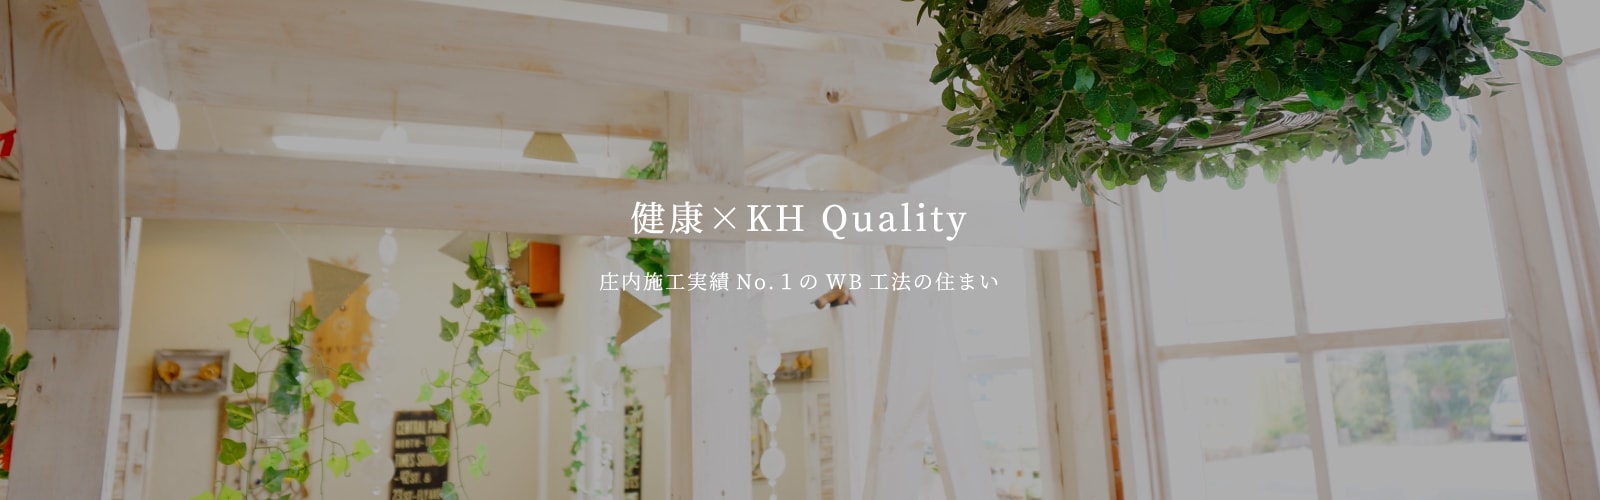 健康×KH Quality【庄内施工実績No.1のWB工法の住まい】